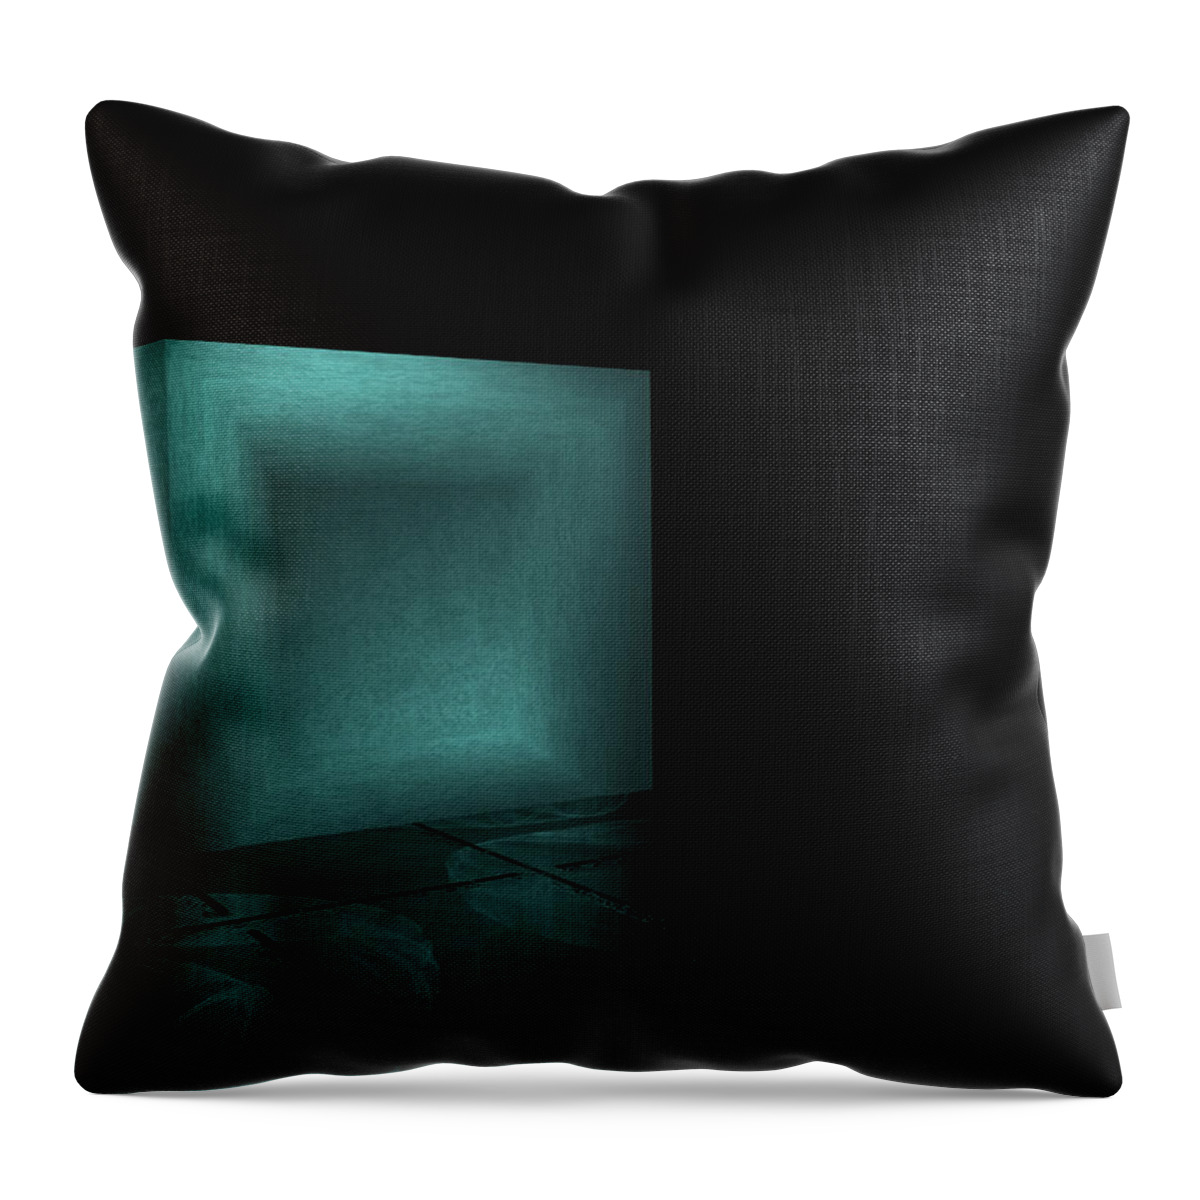 Box Throw Pillow featuring the digital art A Box Alone by Bernie Sirelson